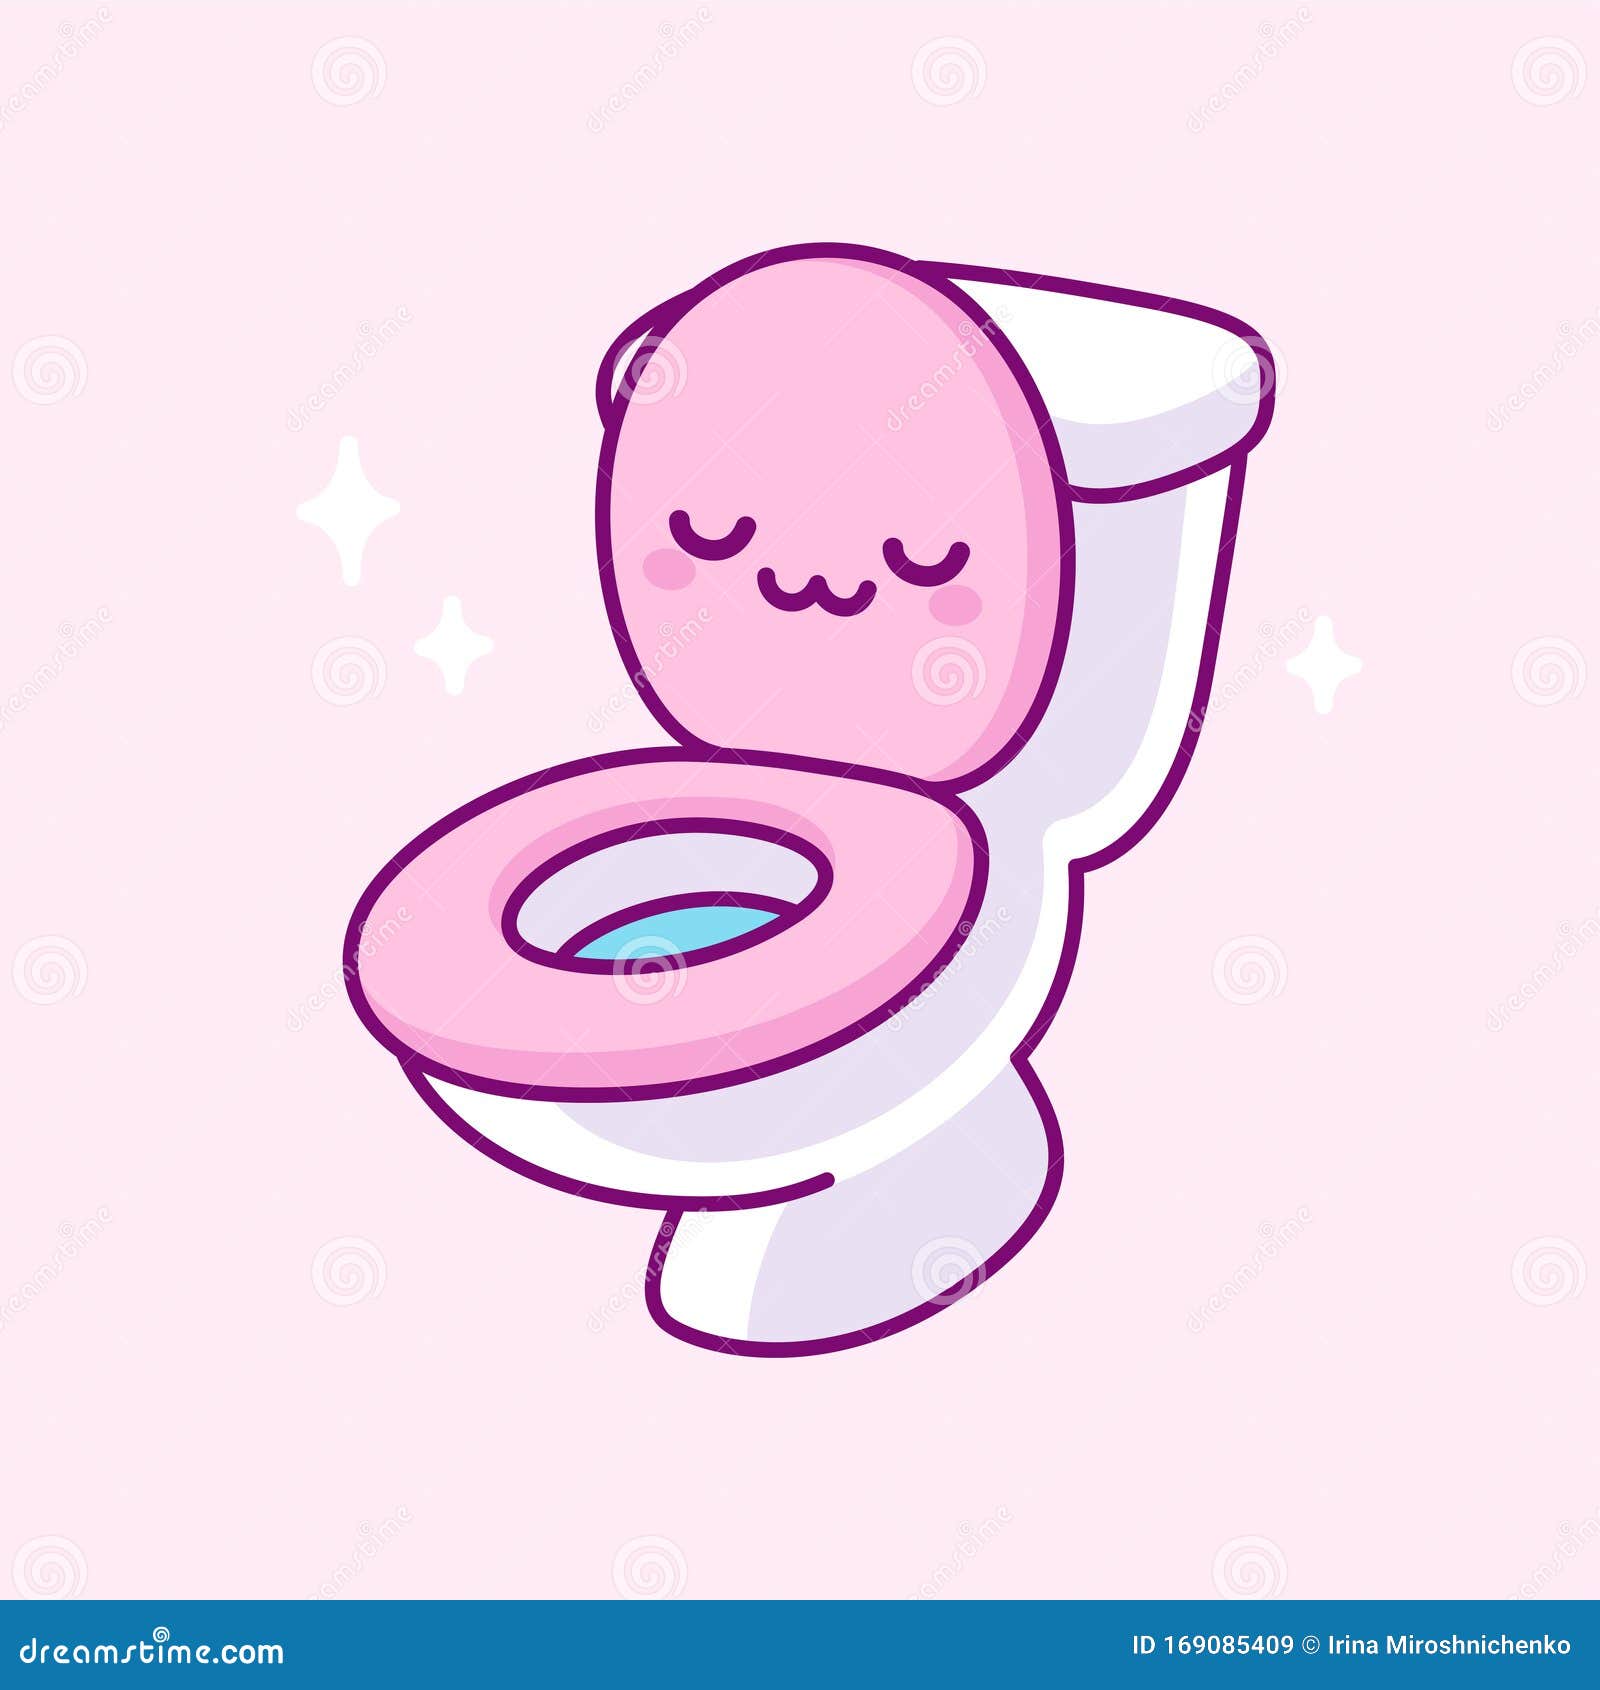 Kawaii Toilet Drawing Cartoon Vector | CartoonDealer.com #169085409